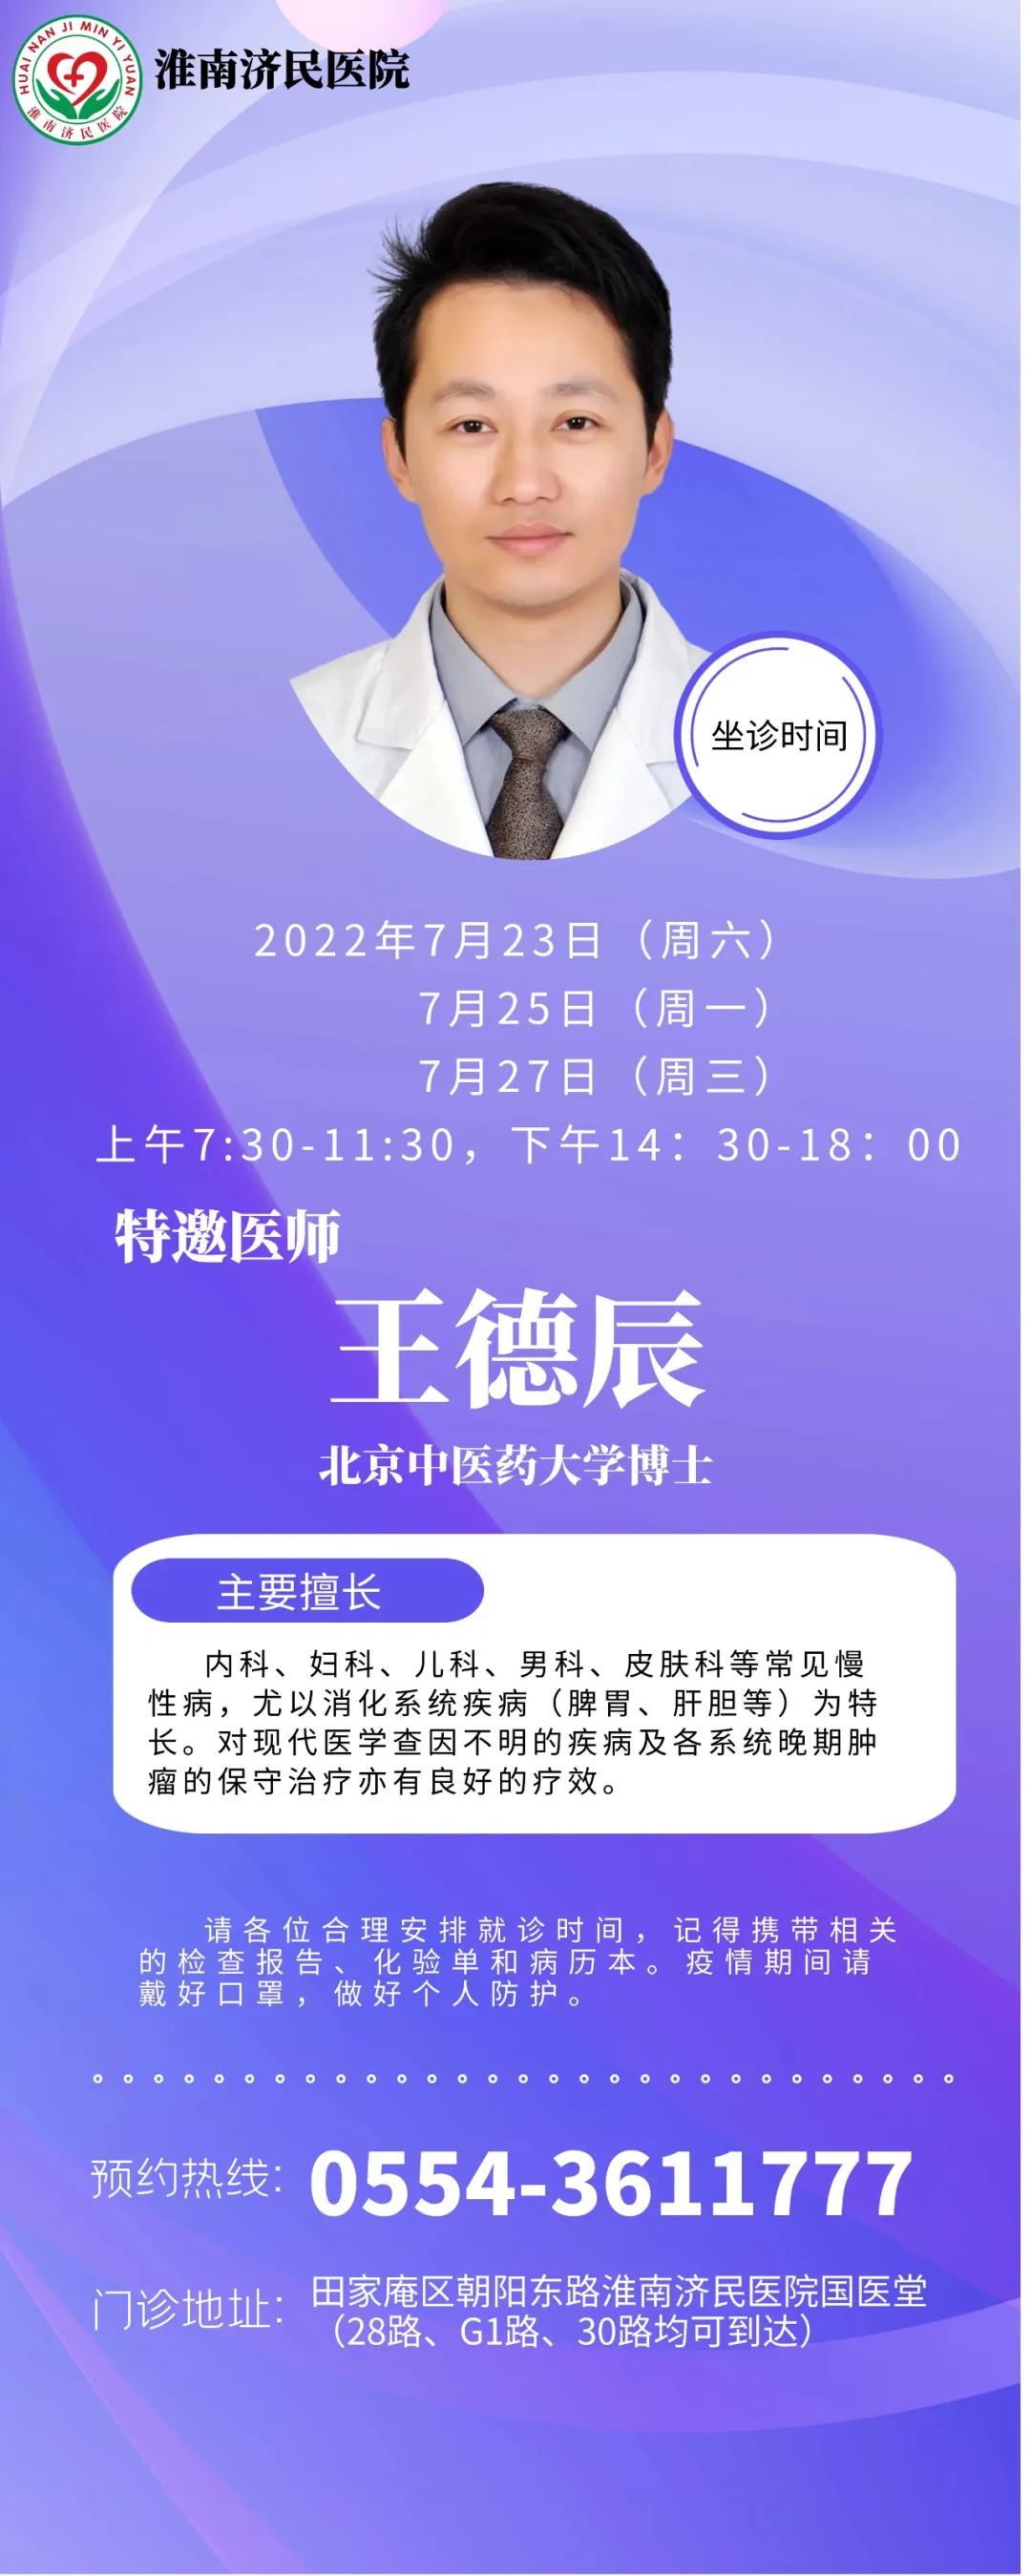 7月23日、25日、27日，淮南濟民醫院國醫堂特邀北京中醫藥大學博士王德辰來院坐診